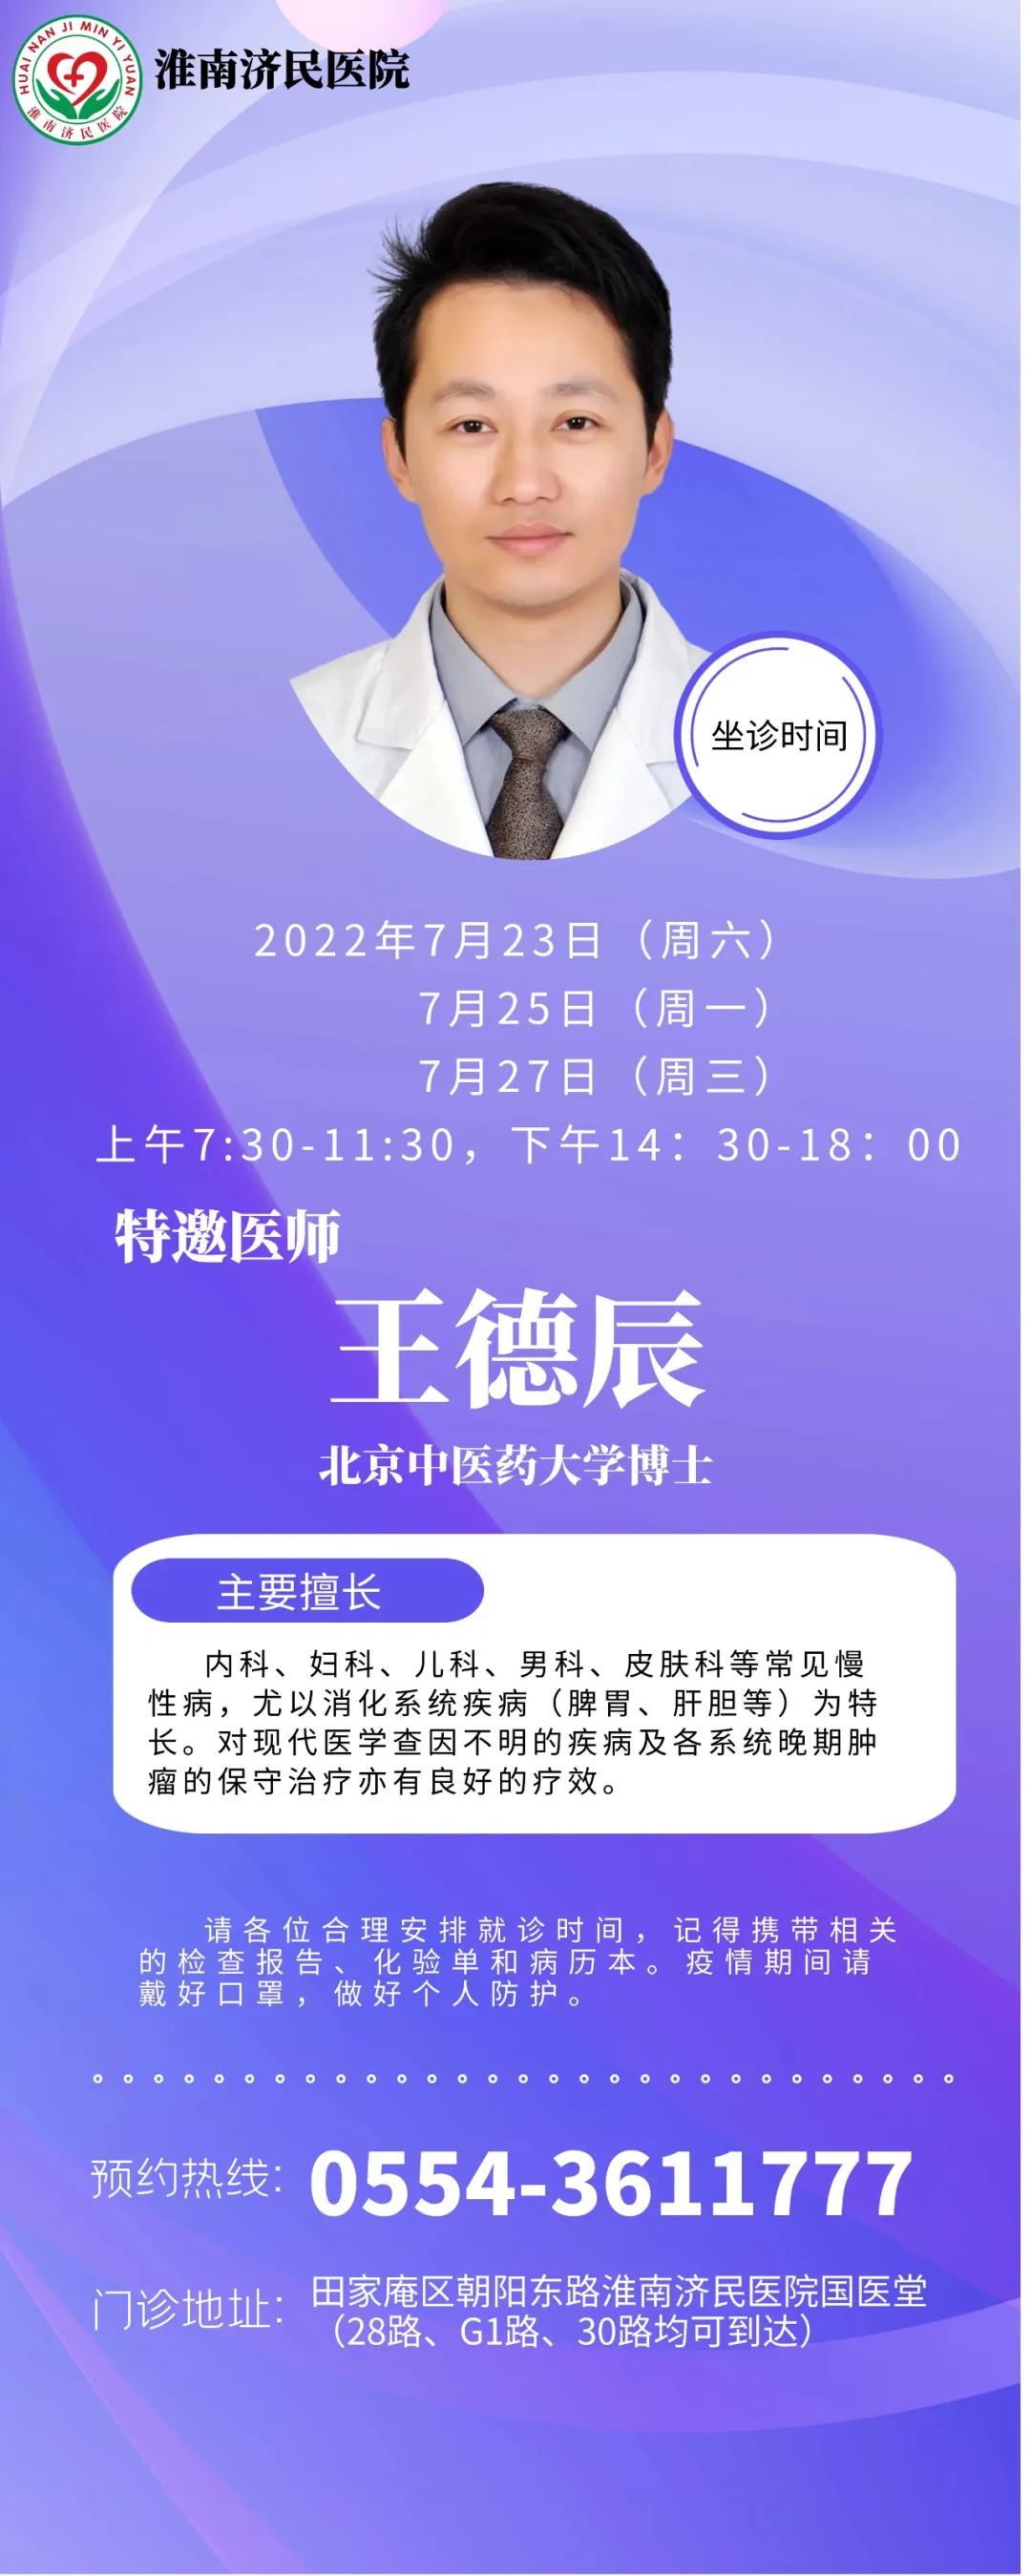 7月23日、25日、27日，淮南濟民醫院國醫堂特邀北京中醫藥大學博士王德辰來院坐診